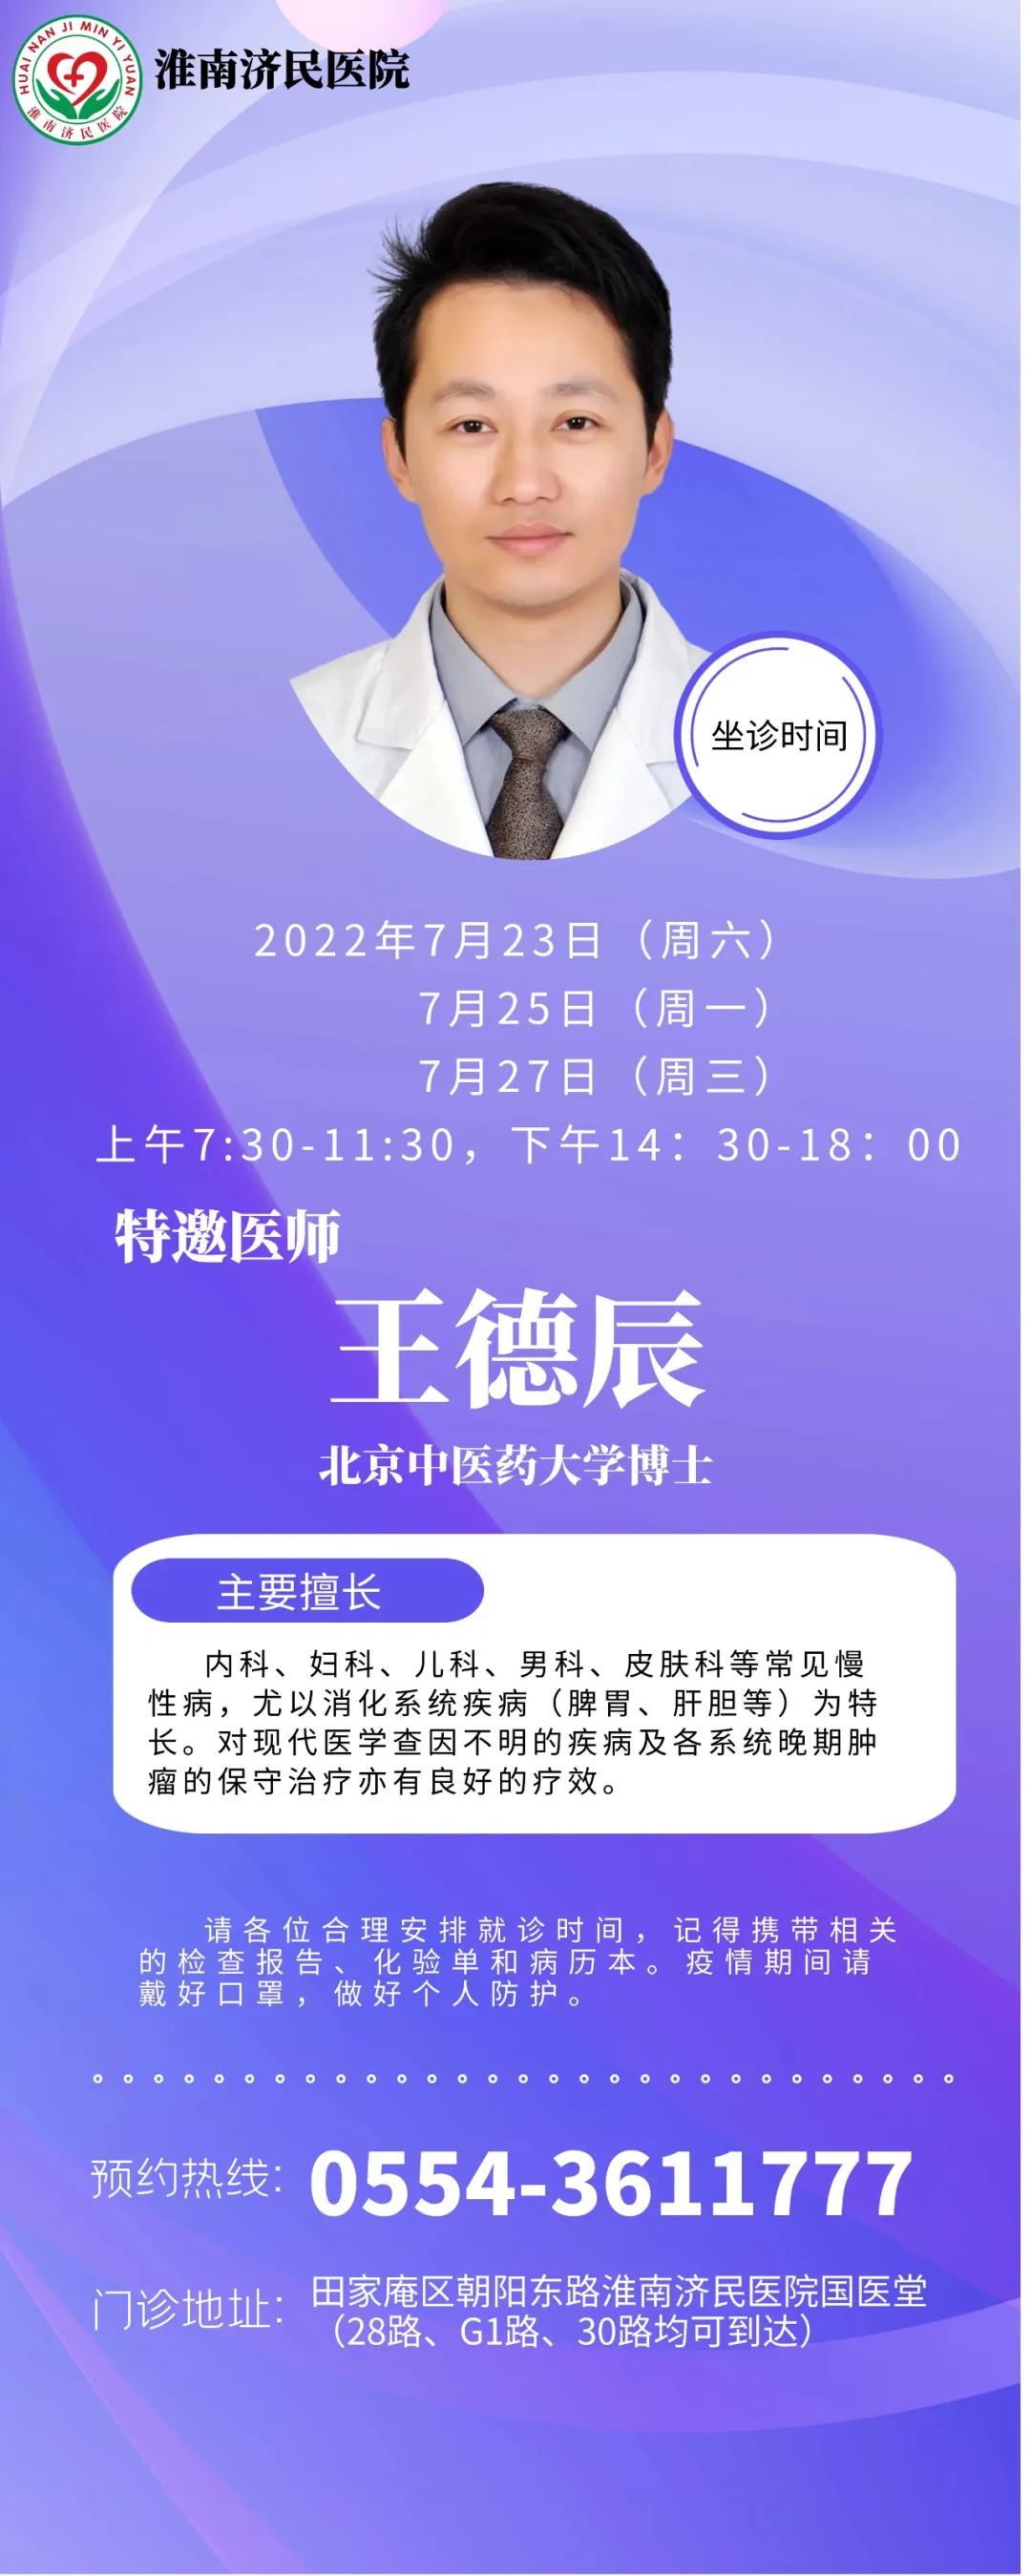 7月23日、25日、27日，淮南濟民醫院國醫堂特邀北京中醫藥大學博士王德辰來院坐診